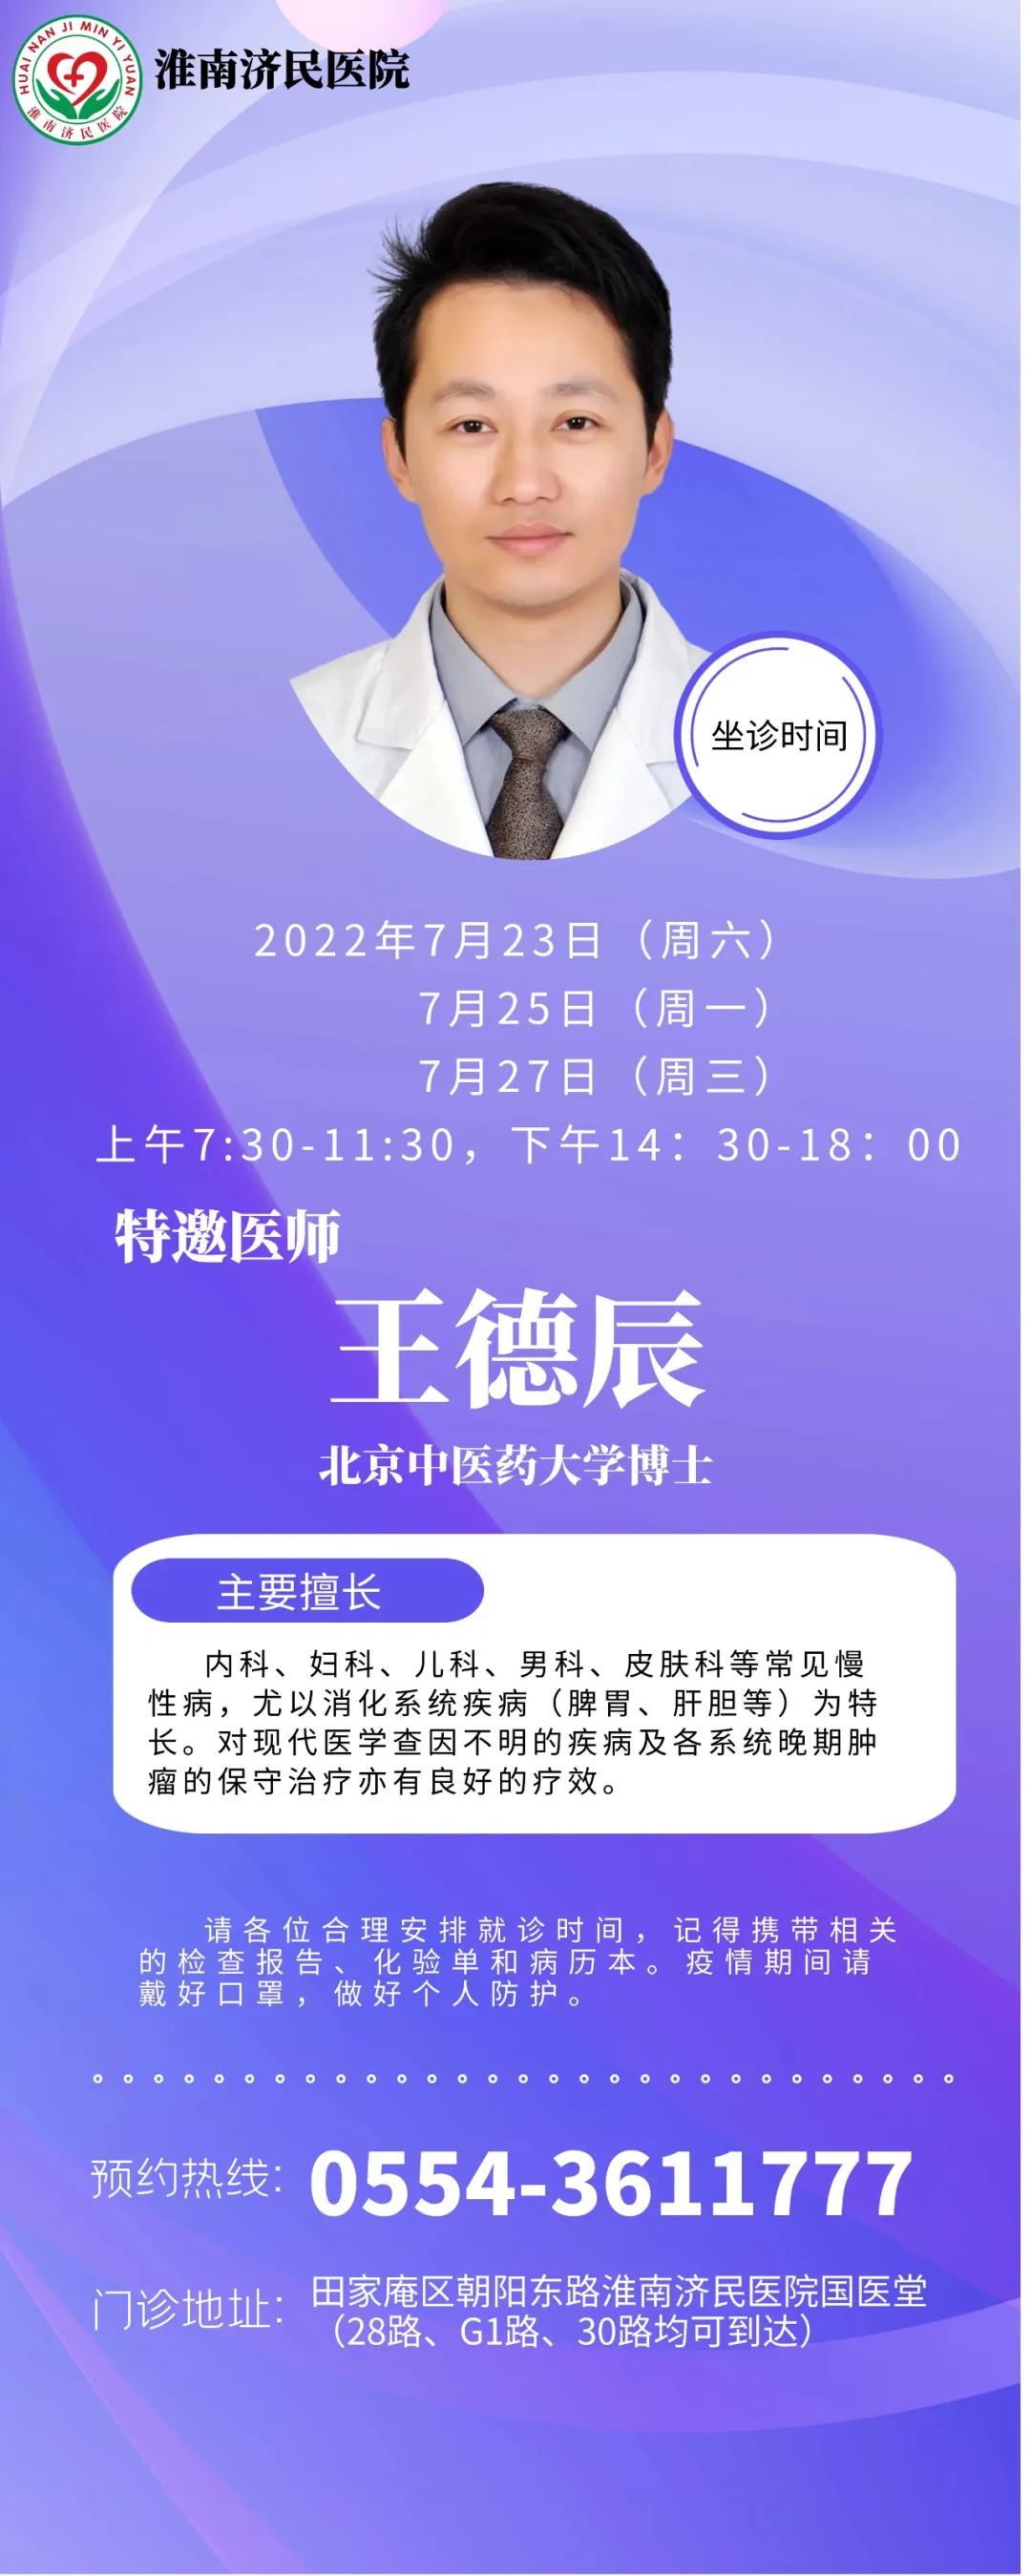 7月23日、25日、27日，淮南濟民醫院國醫堂特邀北京中醫藥大學博士王德辰來院坐診